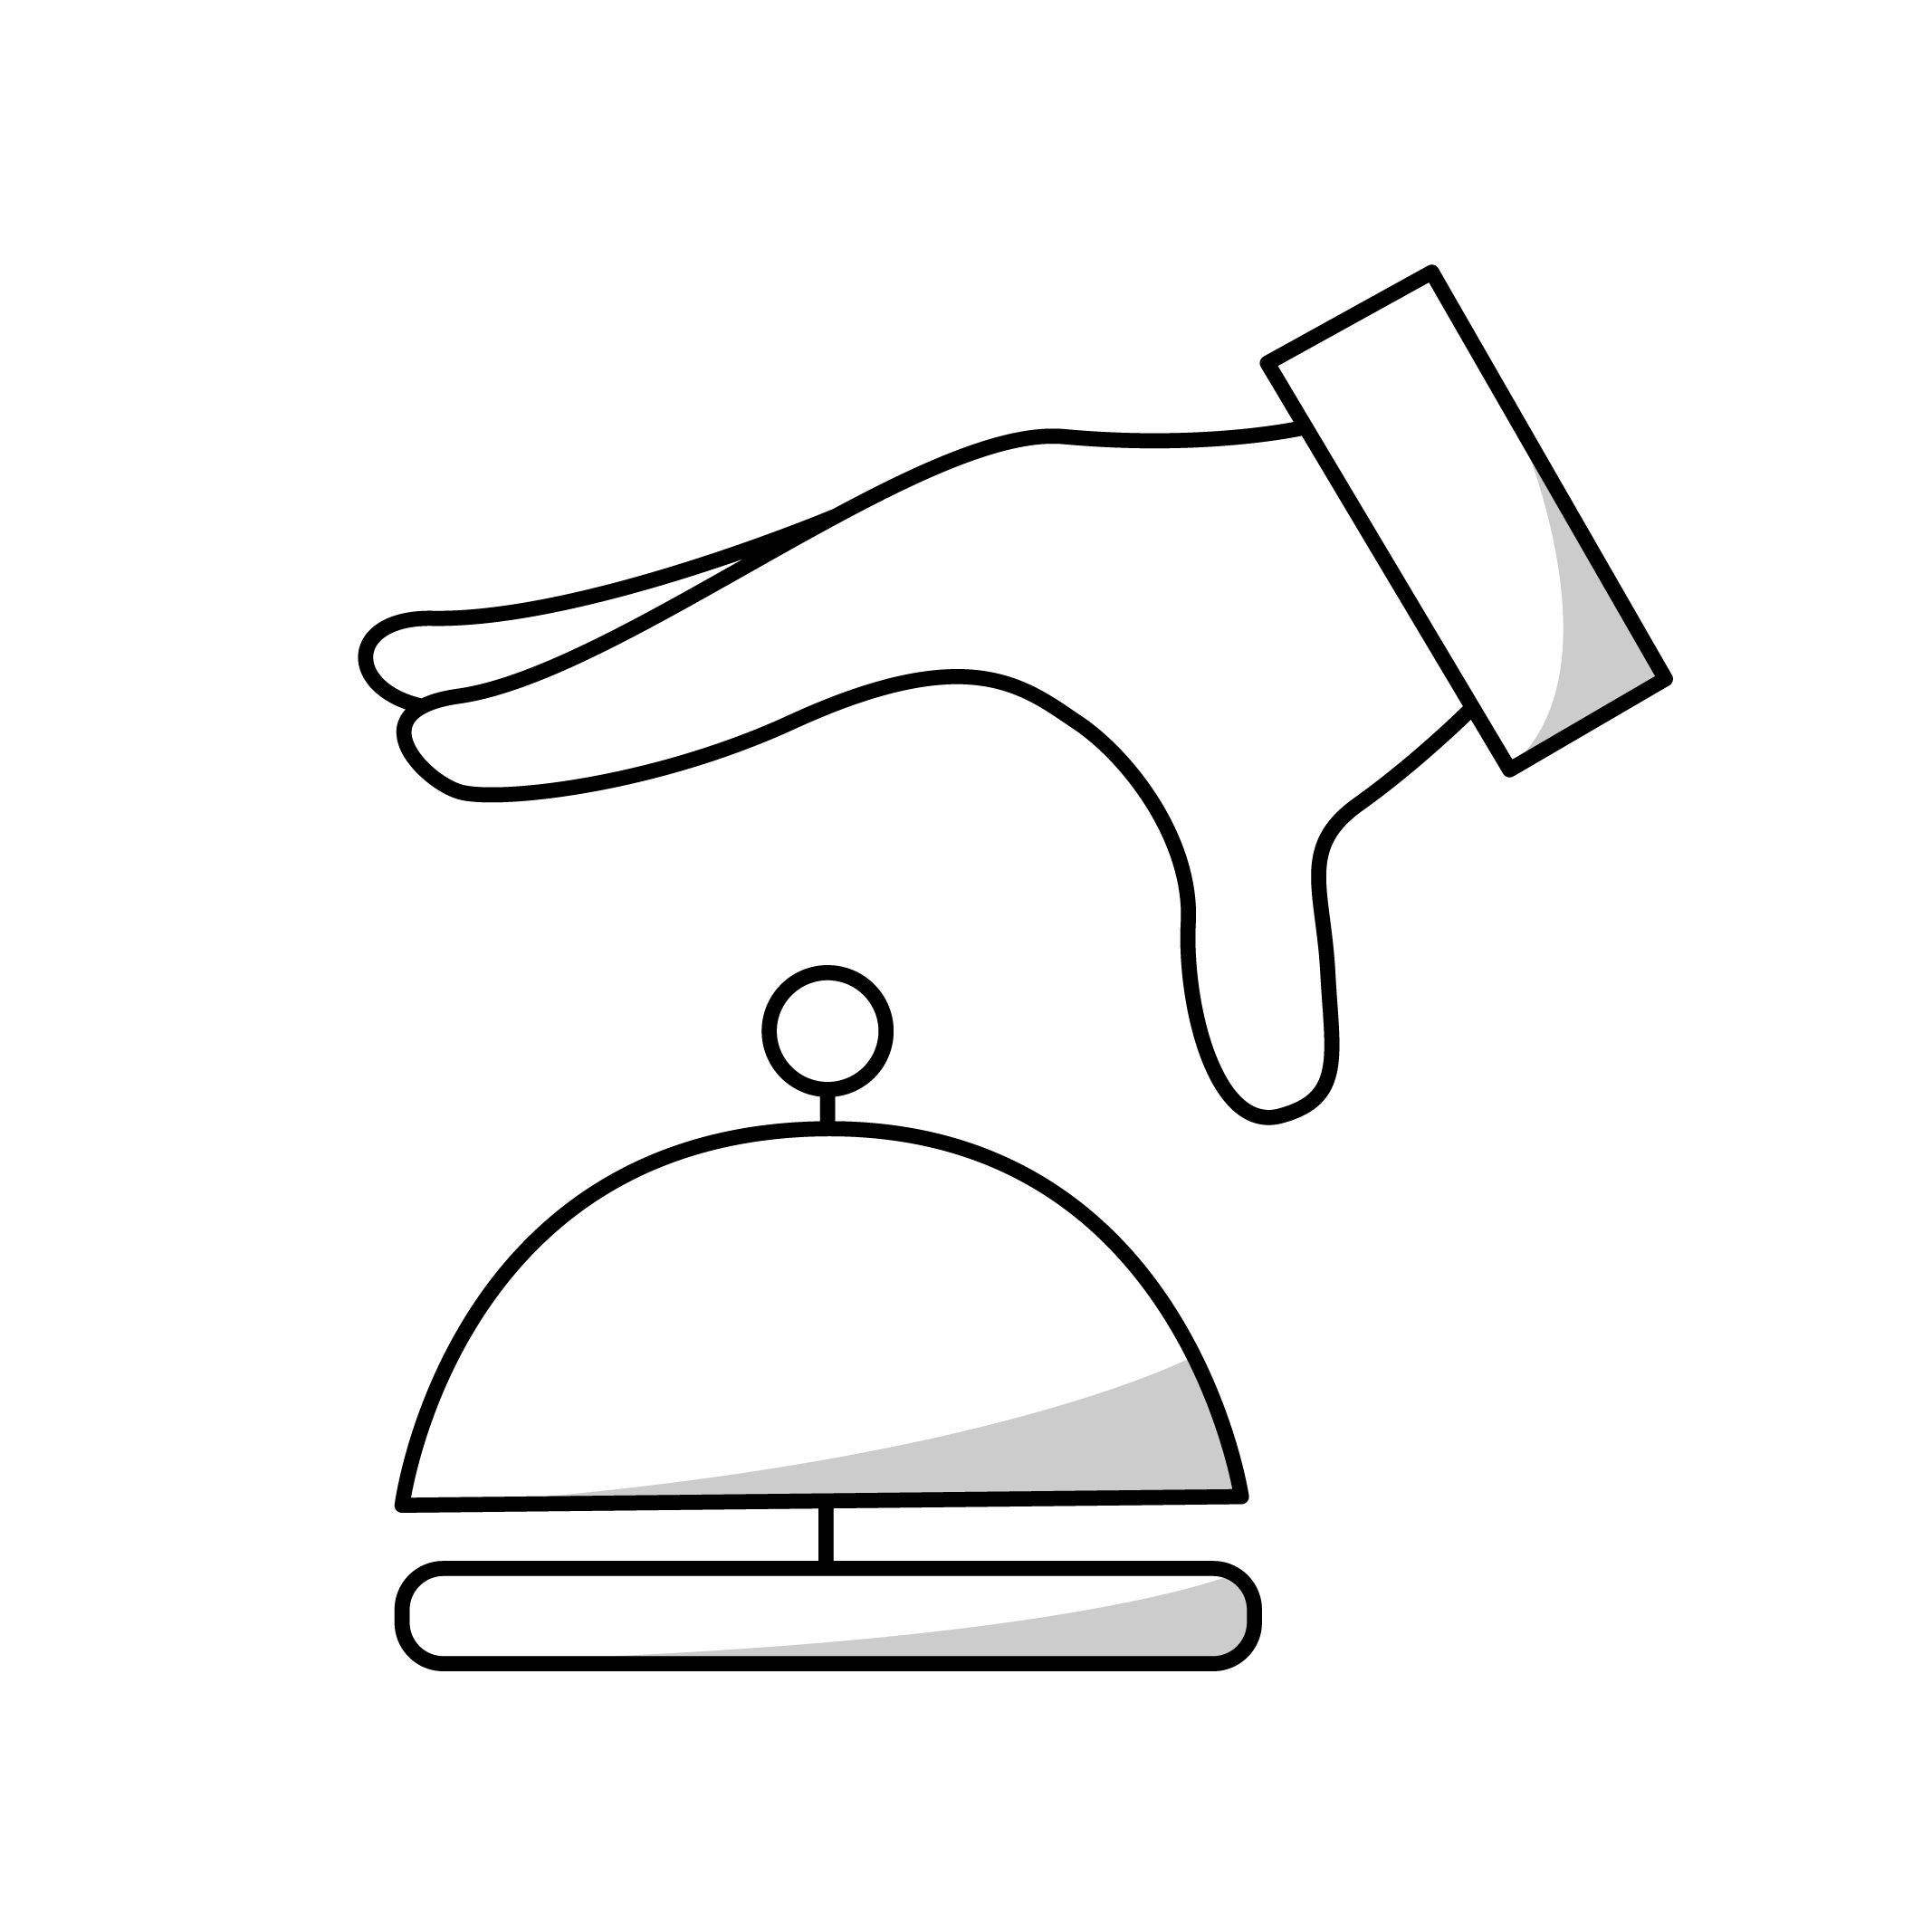 pictogramme noir d'une main s'apprêtant à sonner sur une clochette